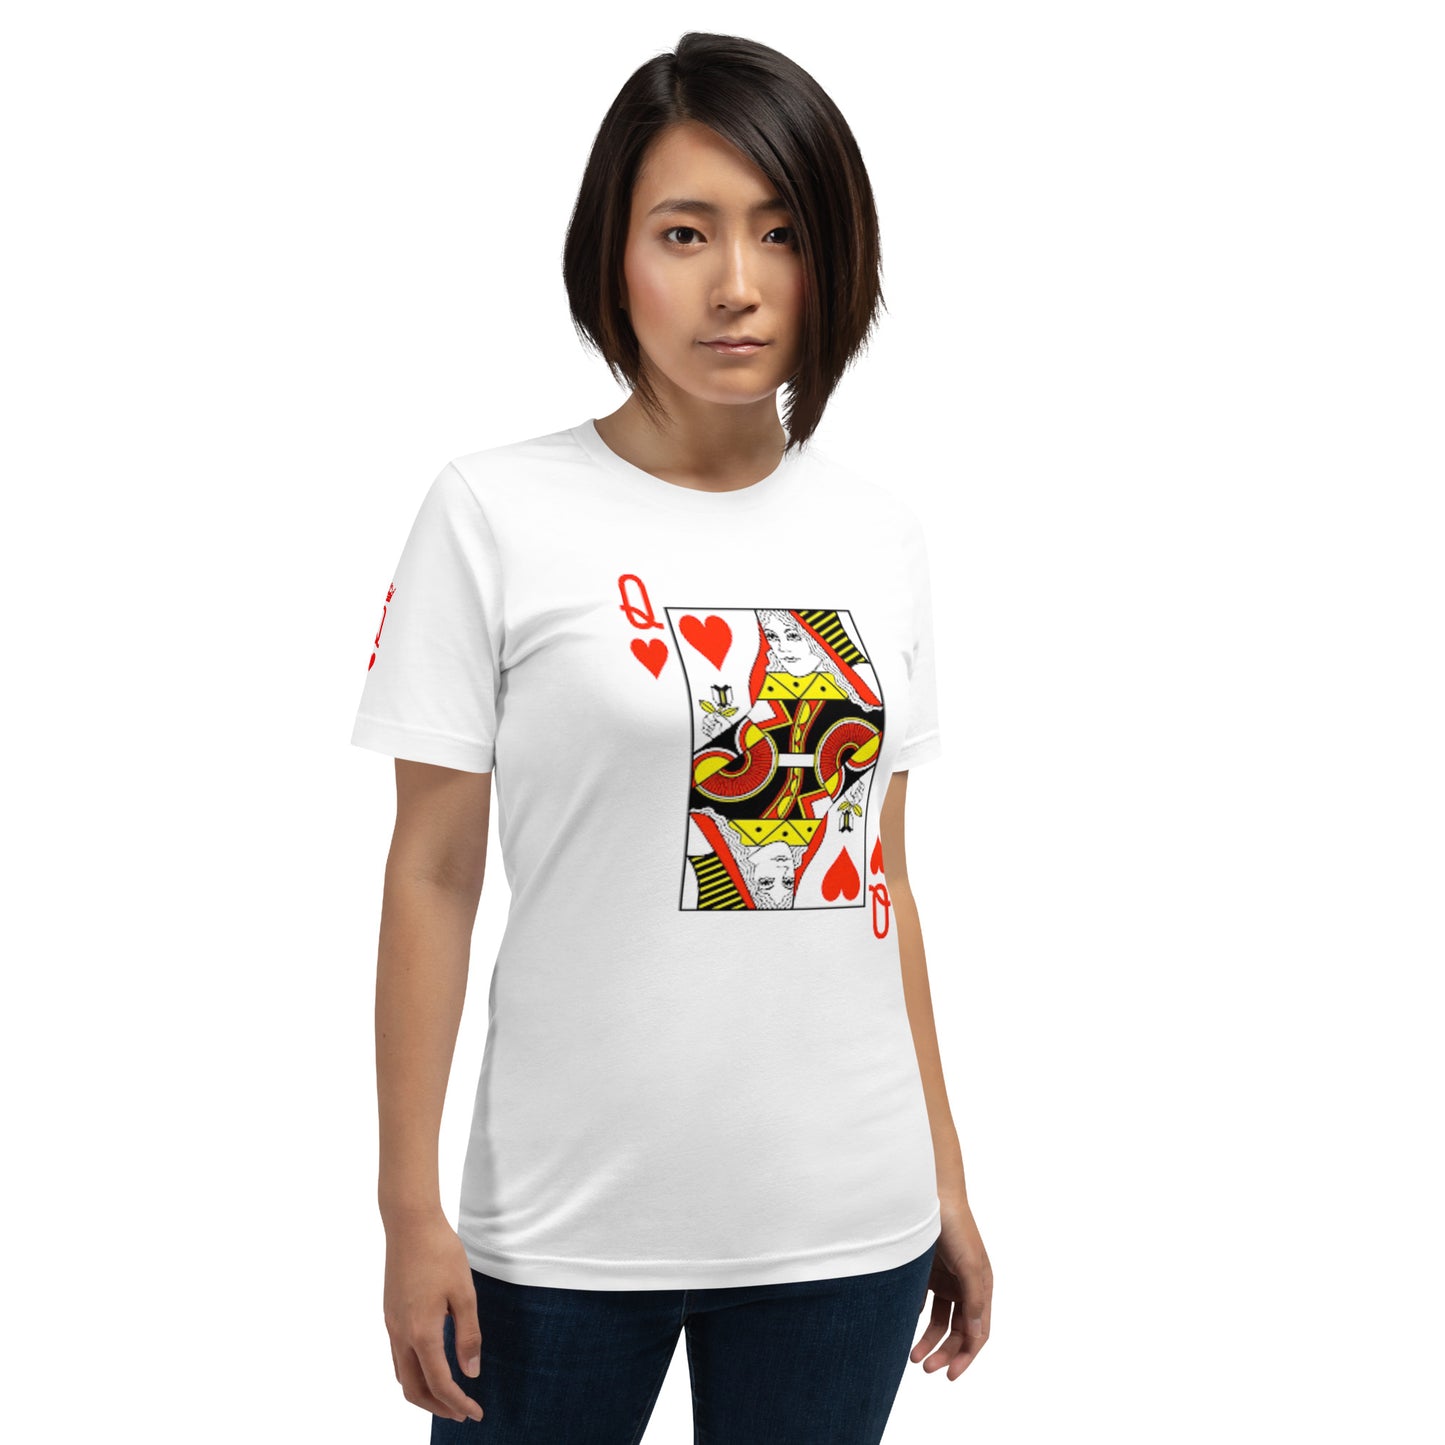 Queen of Hearts Unisex T-shirt